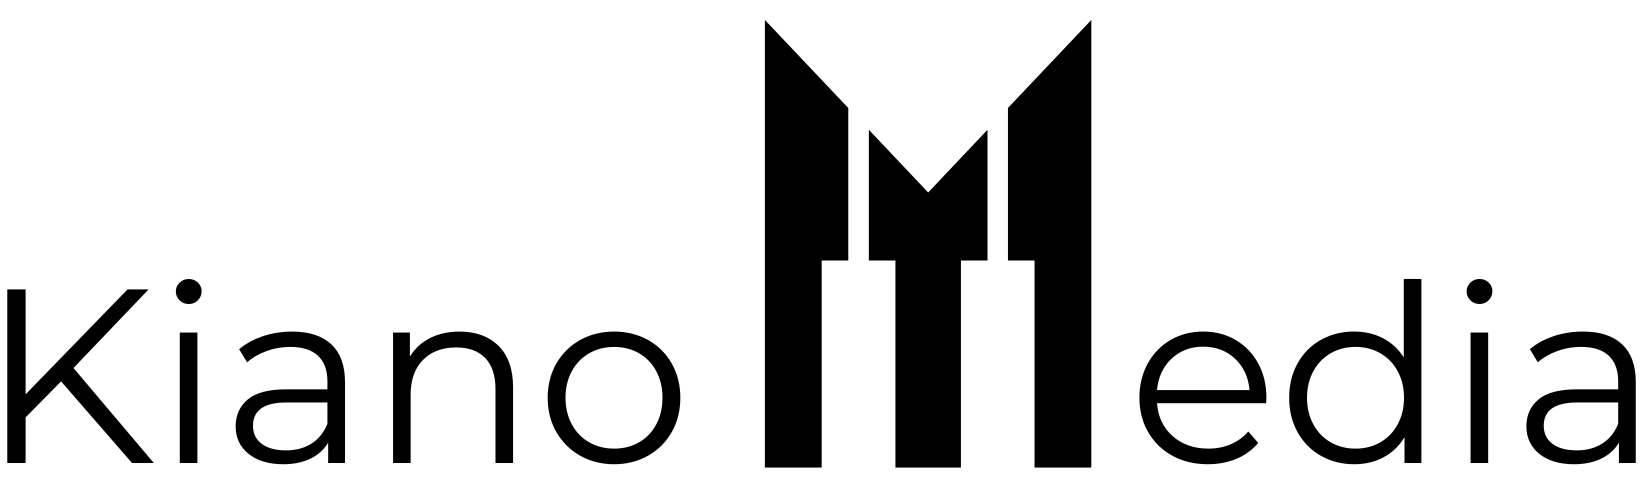 Kiano Media Logo Dark